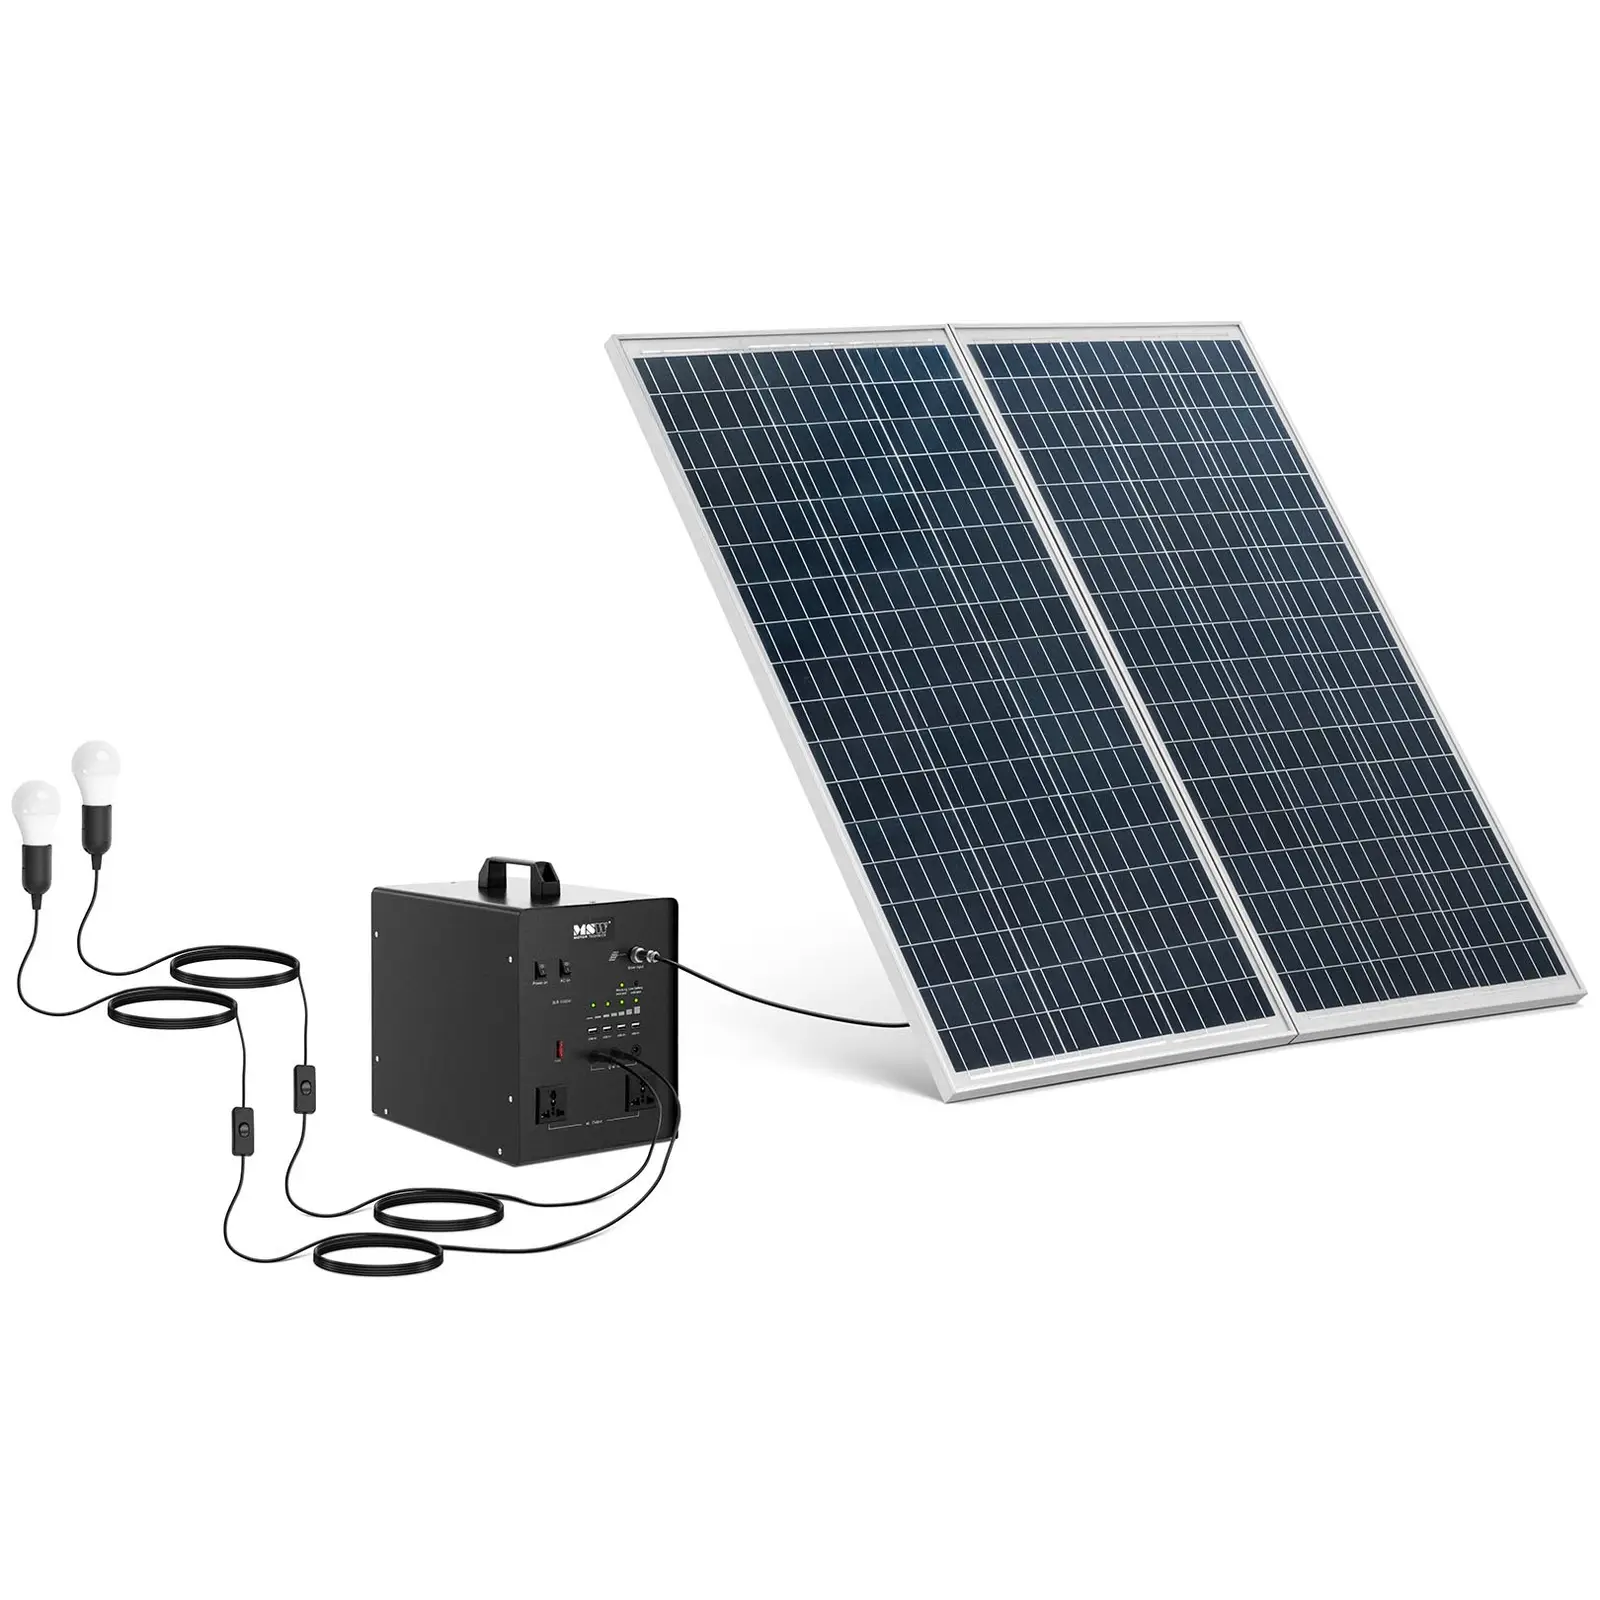 Centrale elettrica portatile con pannello solare e inverter - 1000 W - 5 / 12 /230 V - 3 luci LED